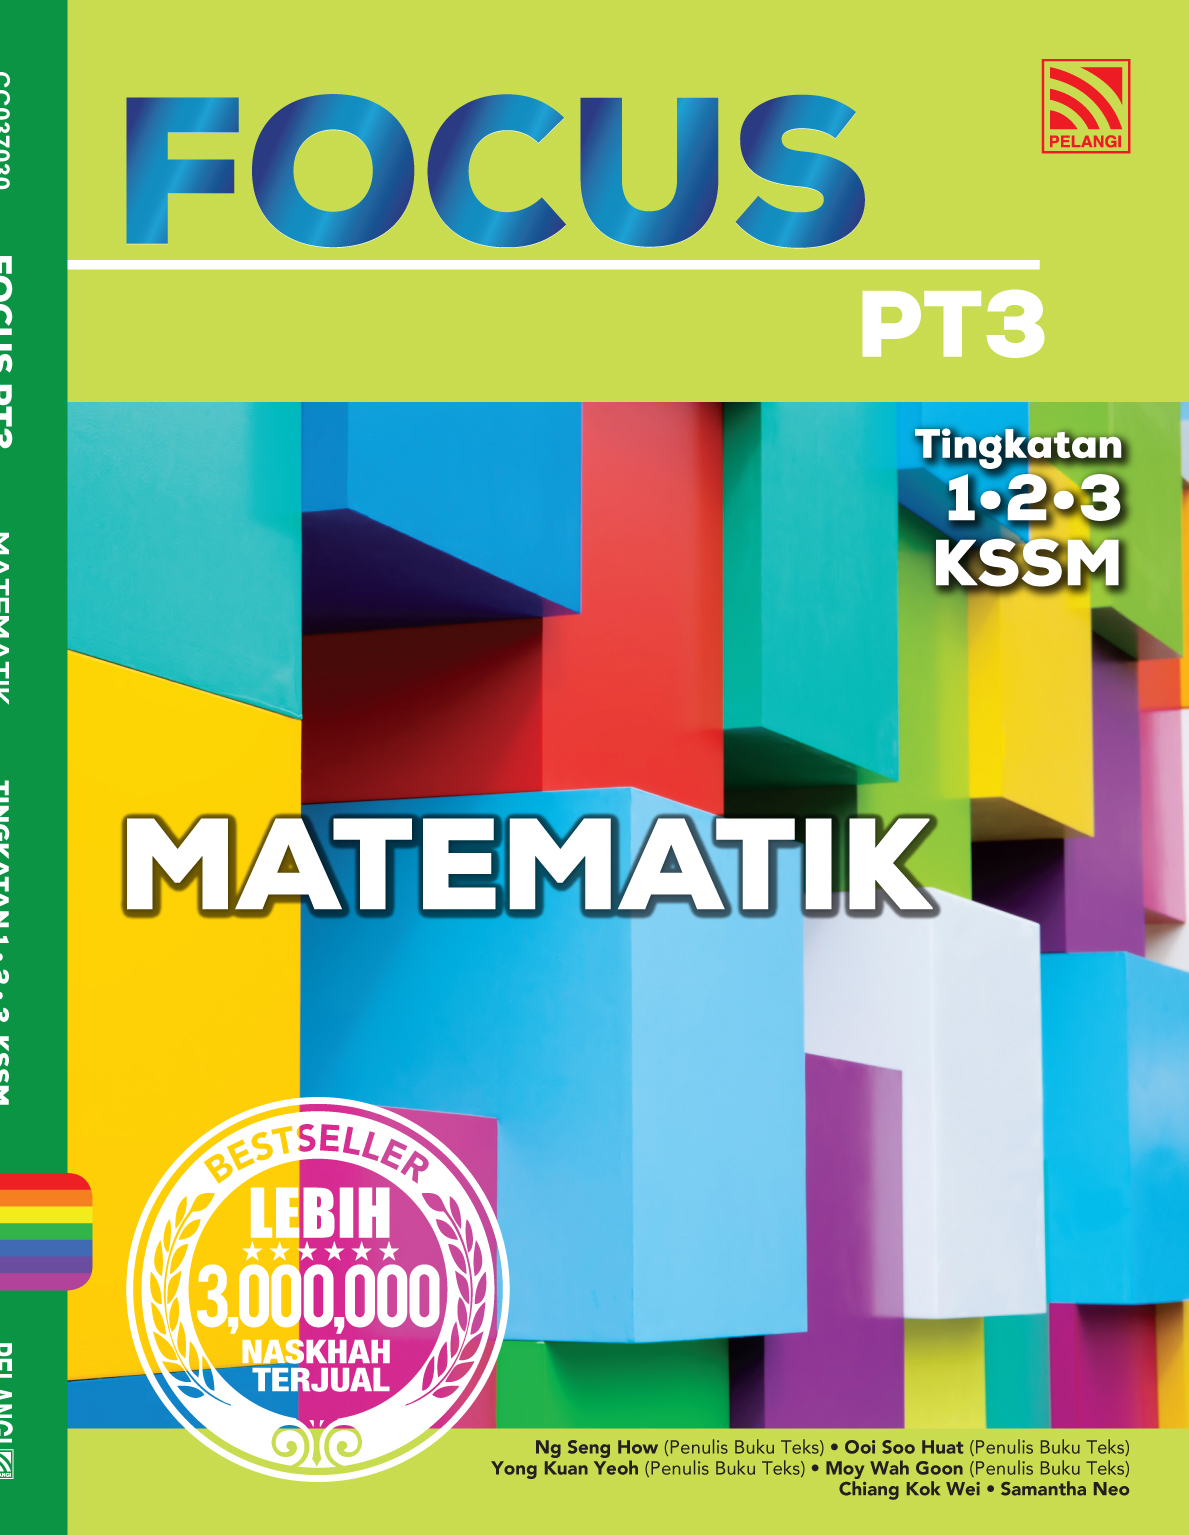 Focus Pt3 2020 Matematik